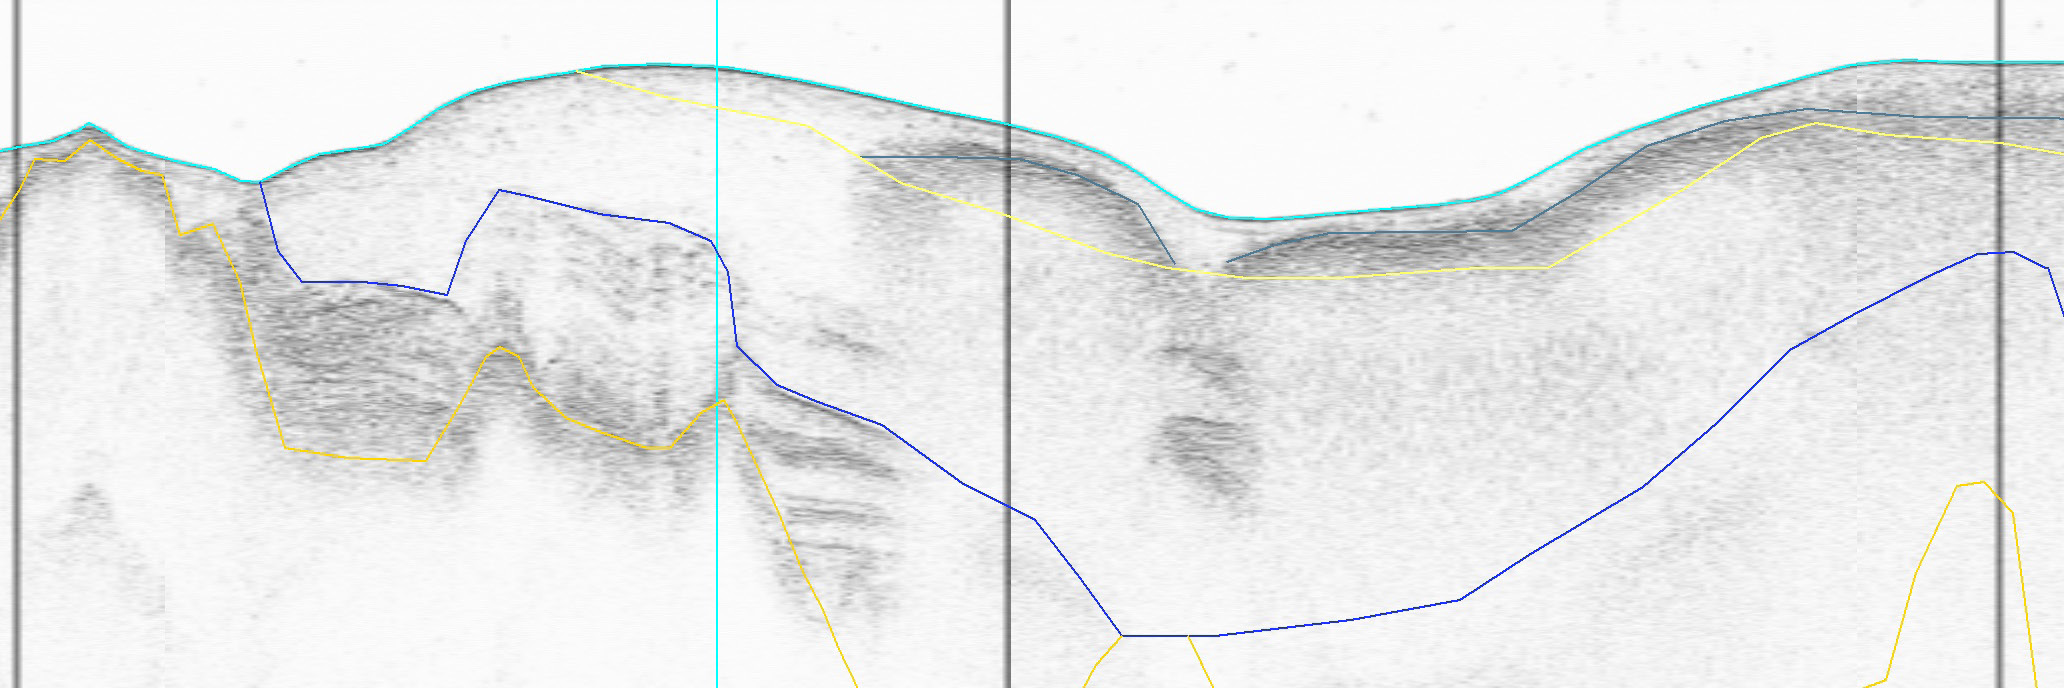 och där framgår det även om nytt förslag angetts för respektive område. I sjökortet visas även ungefärlig position för utsnitt av sedimentekolodsprofilerna. Dessa visas med blå eller grön linje.